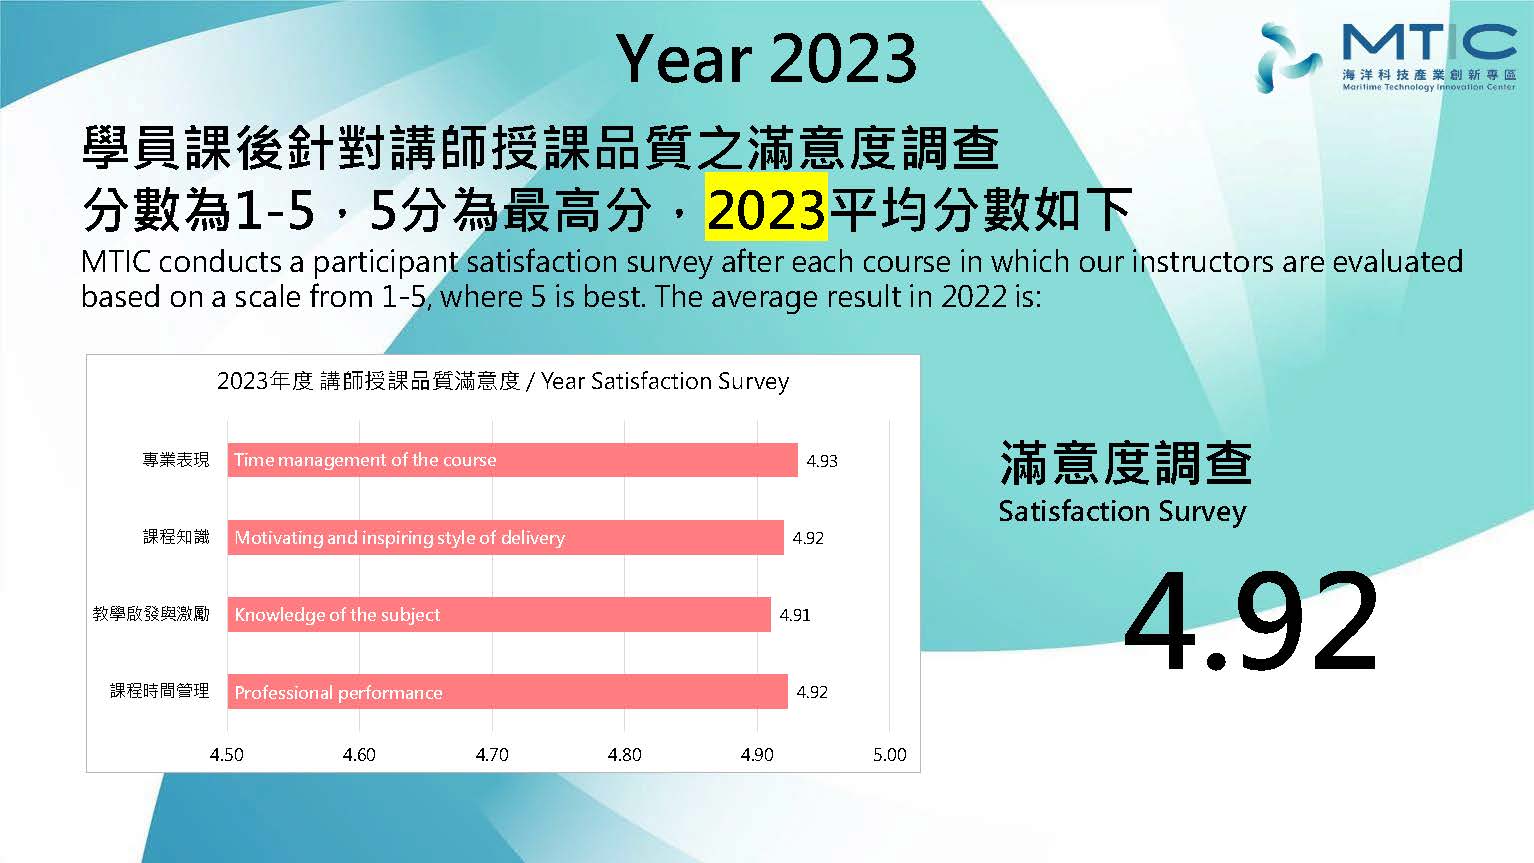 2023課程講師授課滿意度 Satisfaction Survey